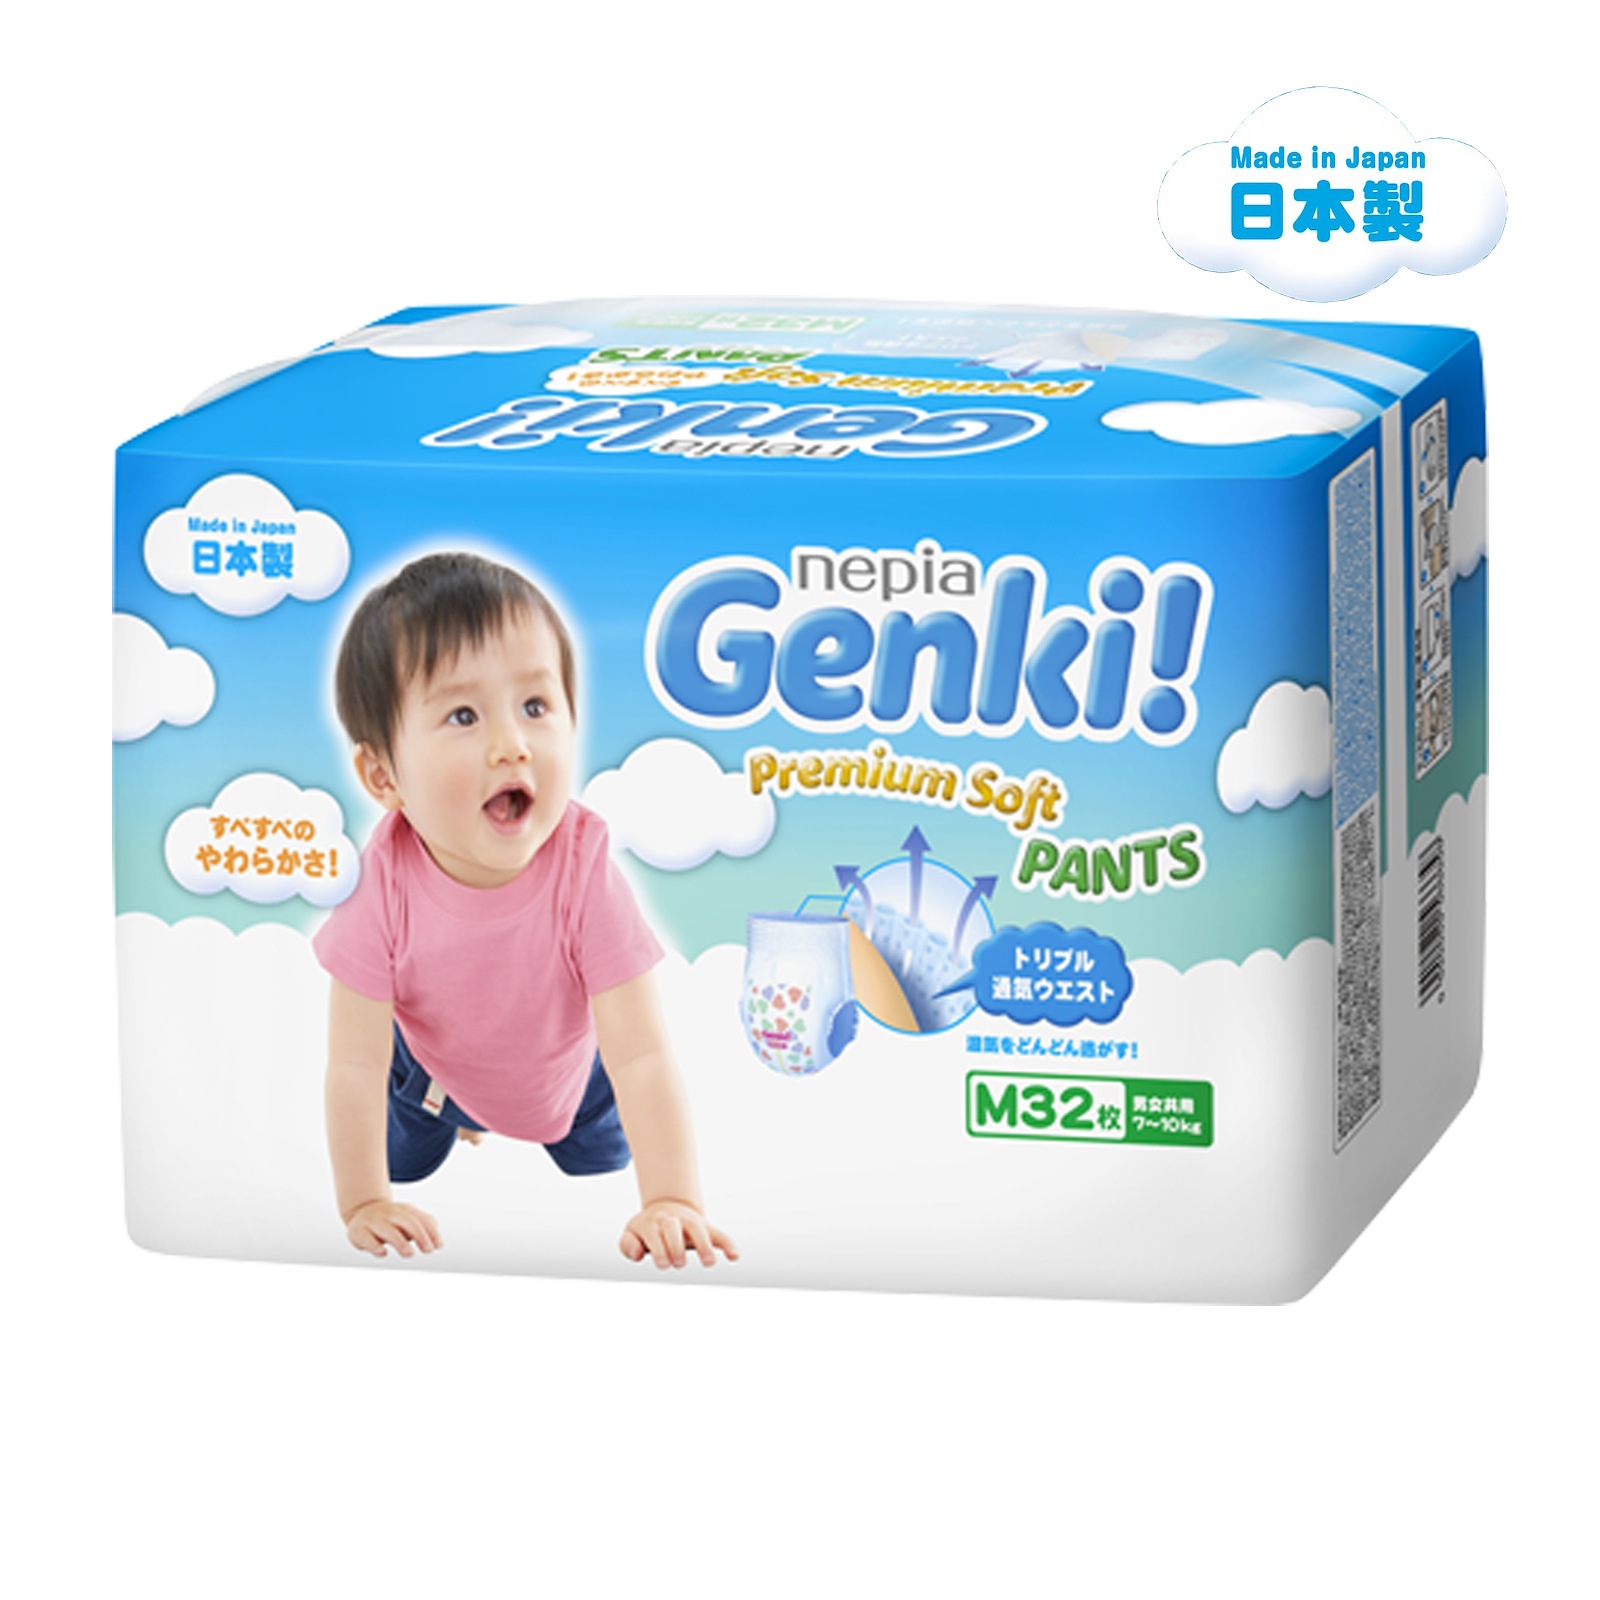 Genki Diapers Premium Soft Pants M Carton Deal (M32 x6)